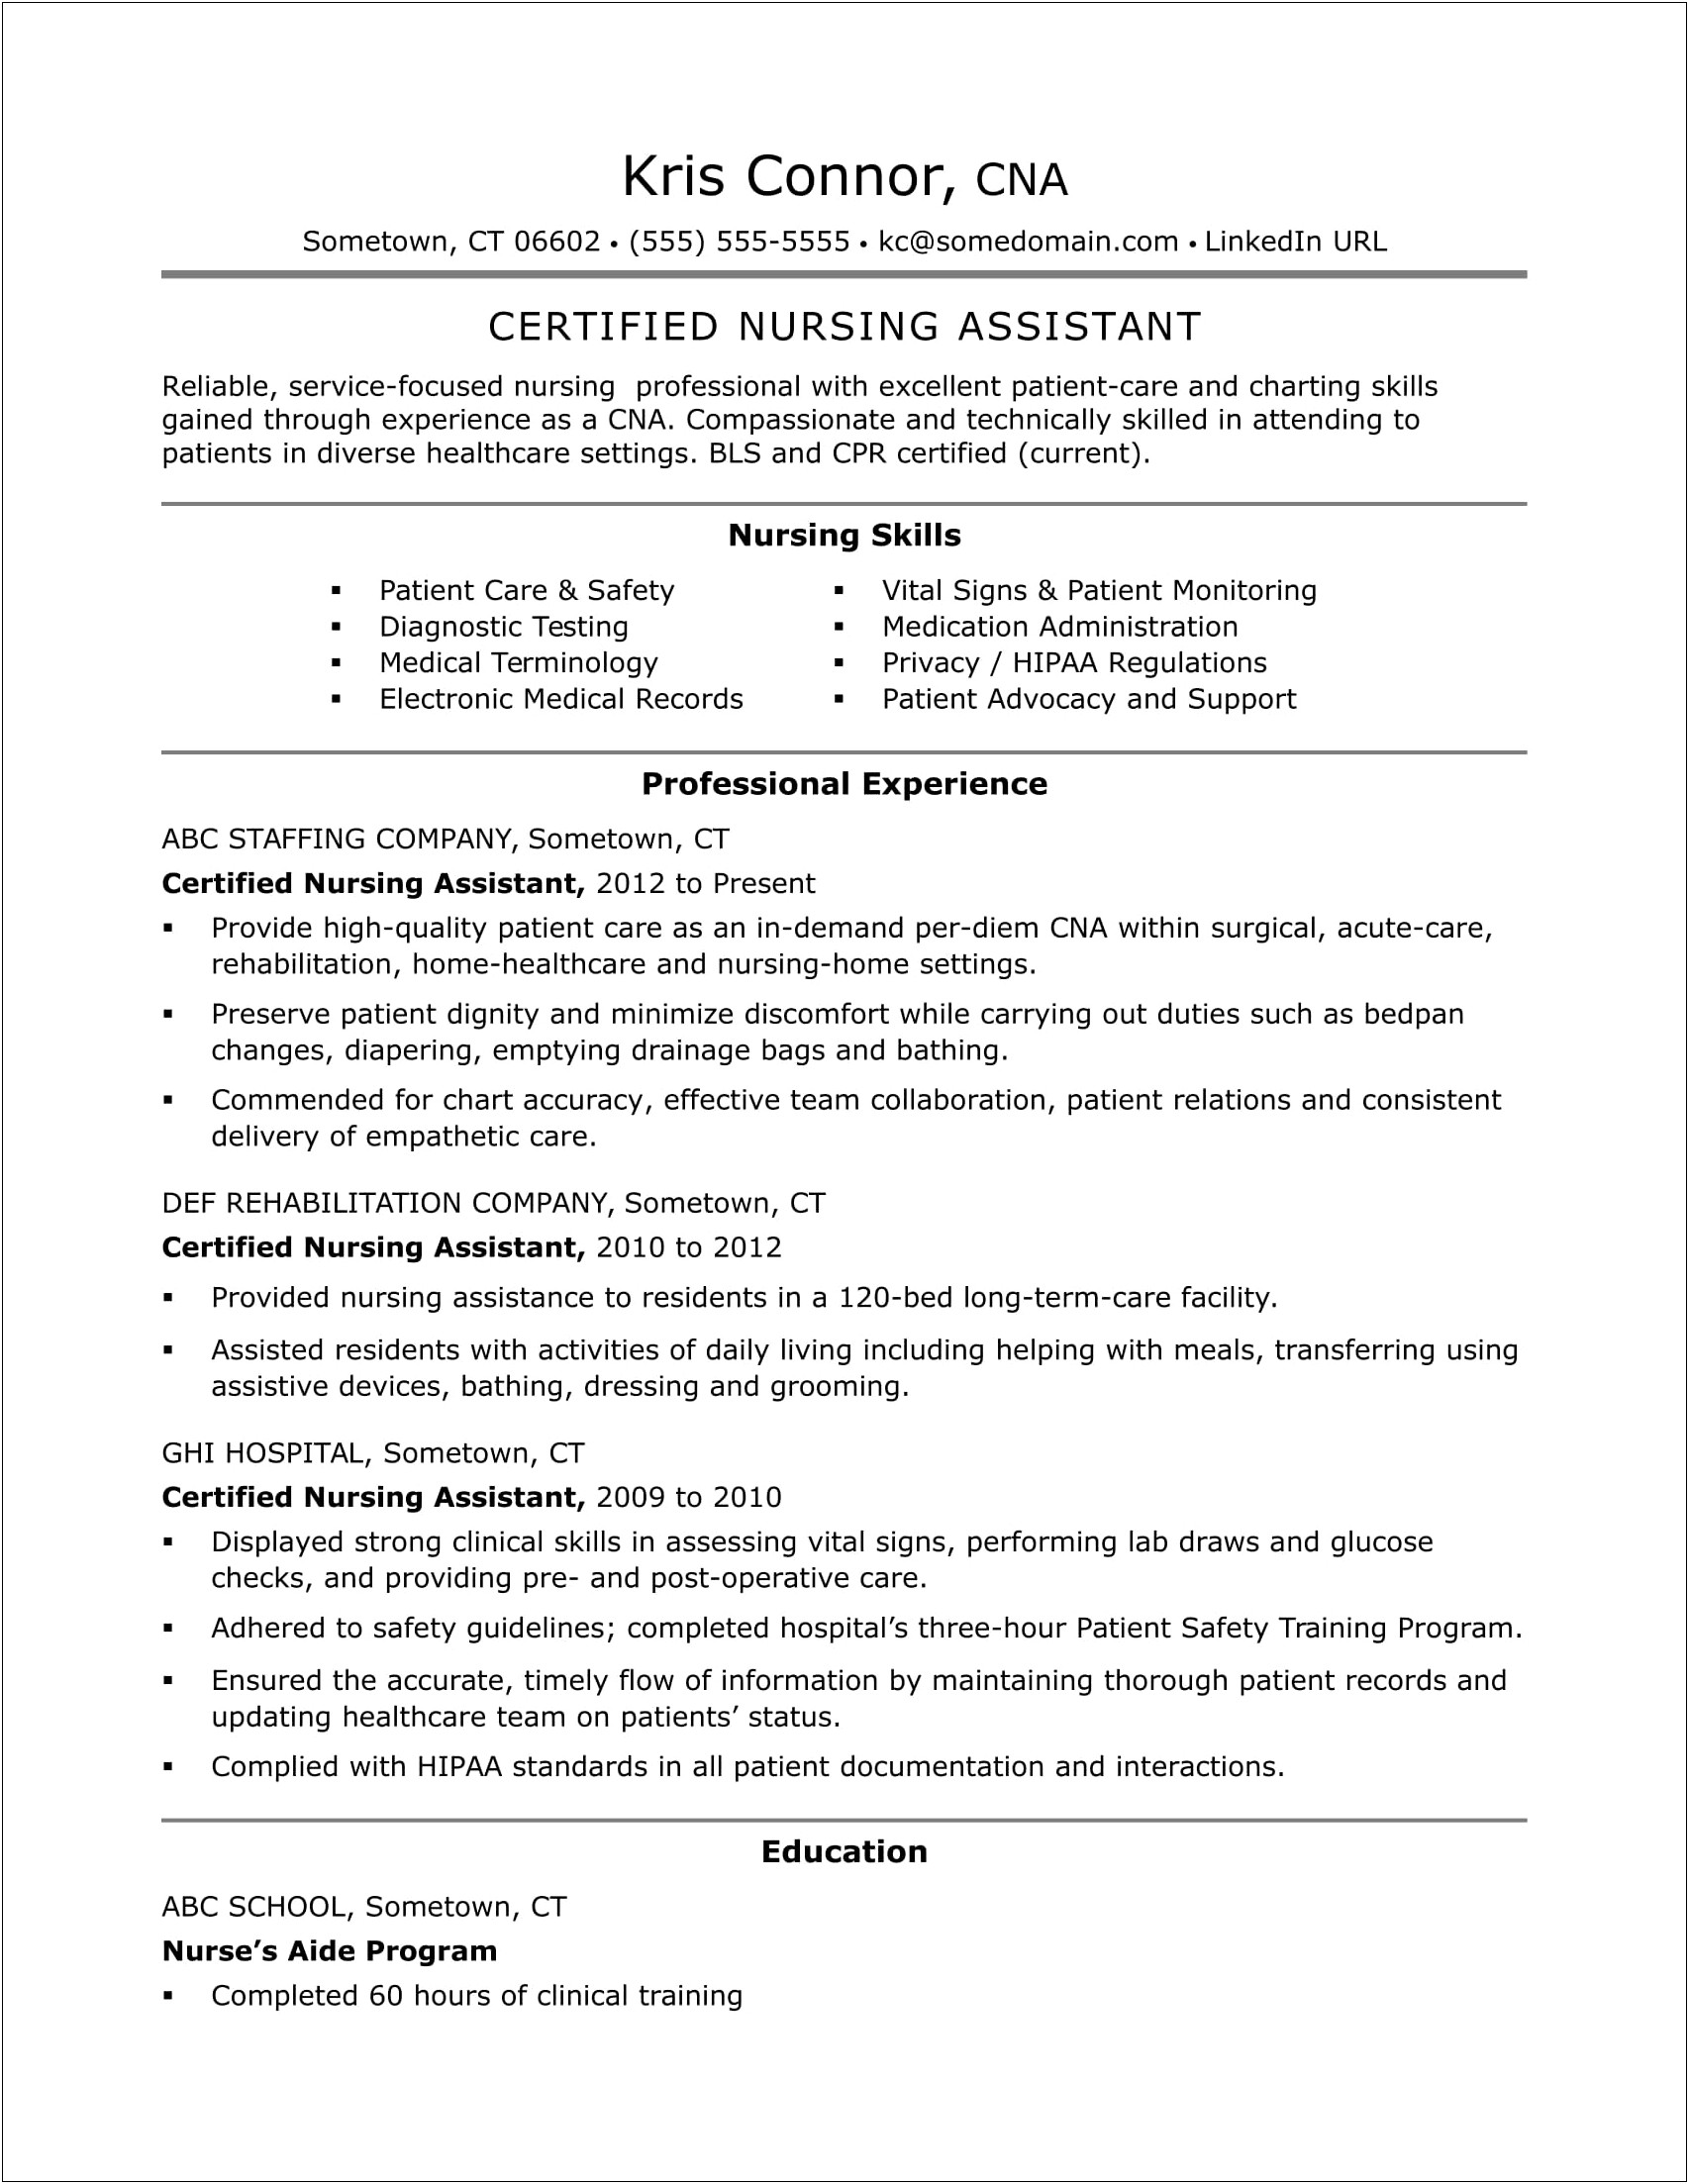 Resume Job Description For Home Care Nurse